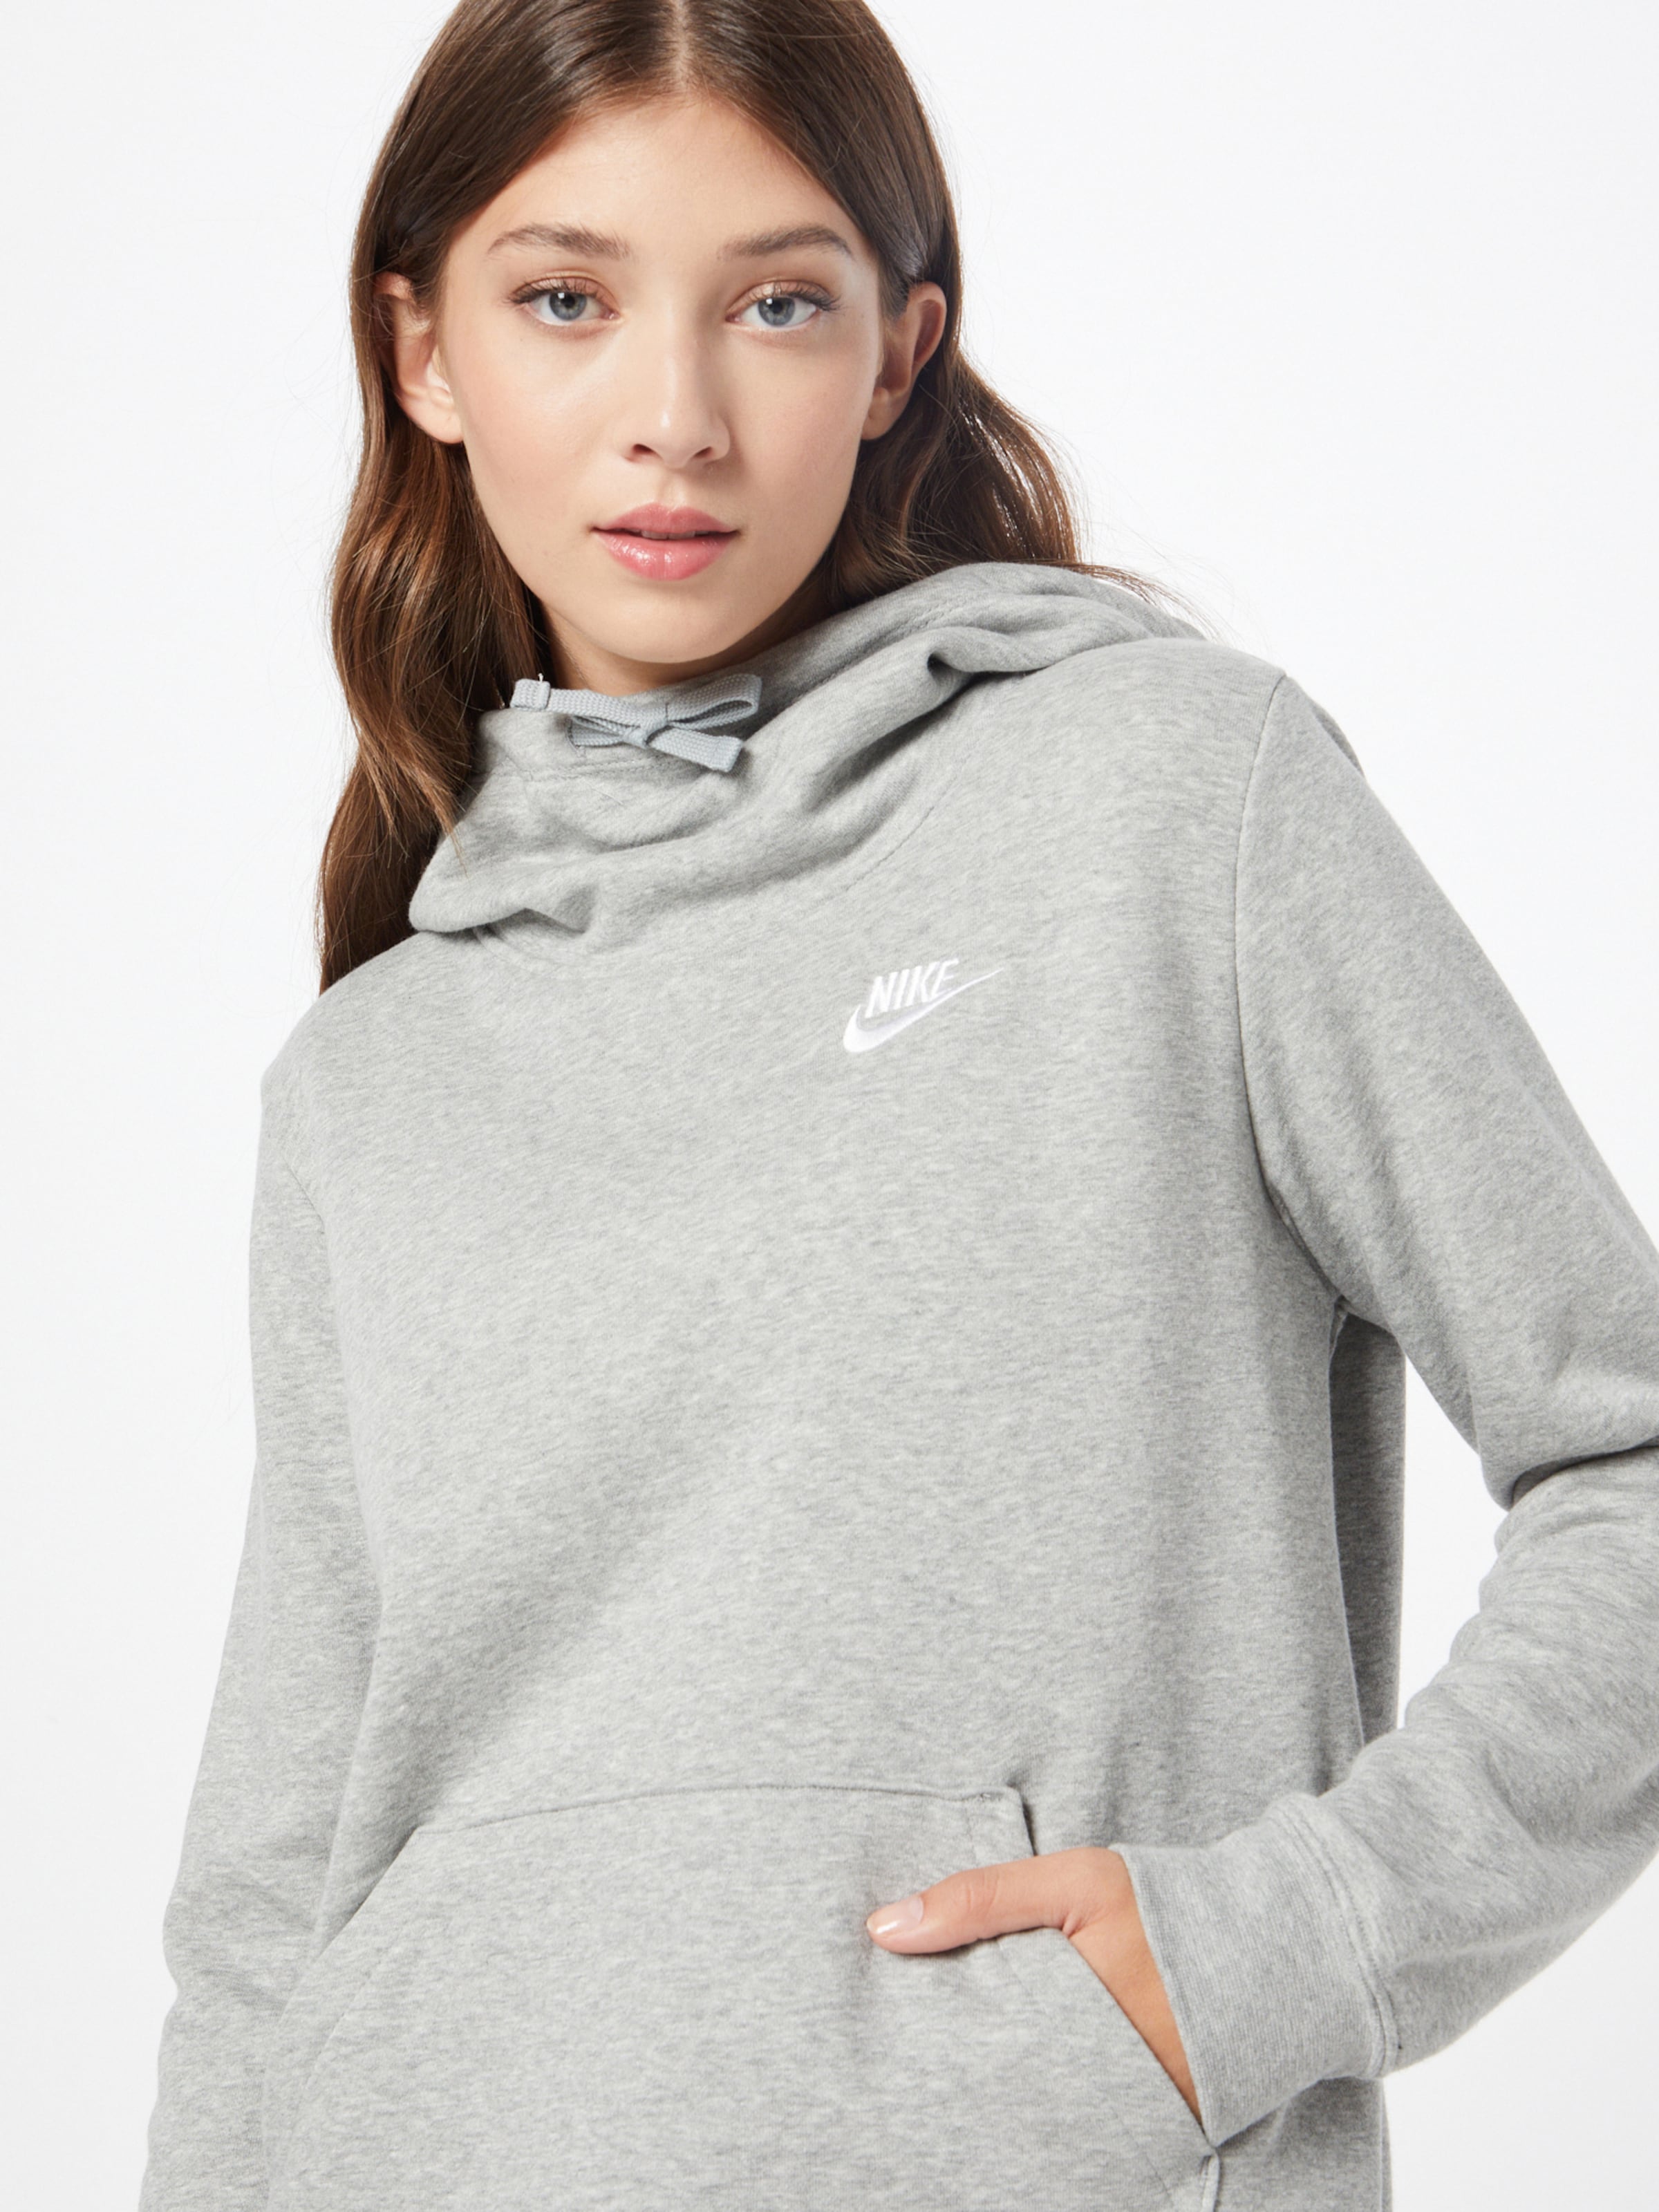 Nike Sportswear i | ABOUT YOU